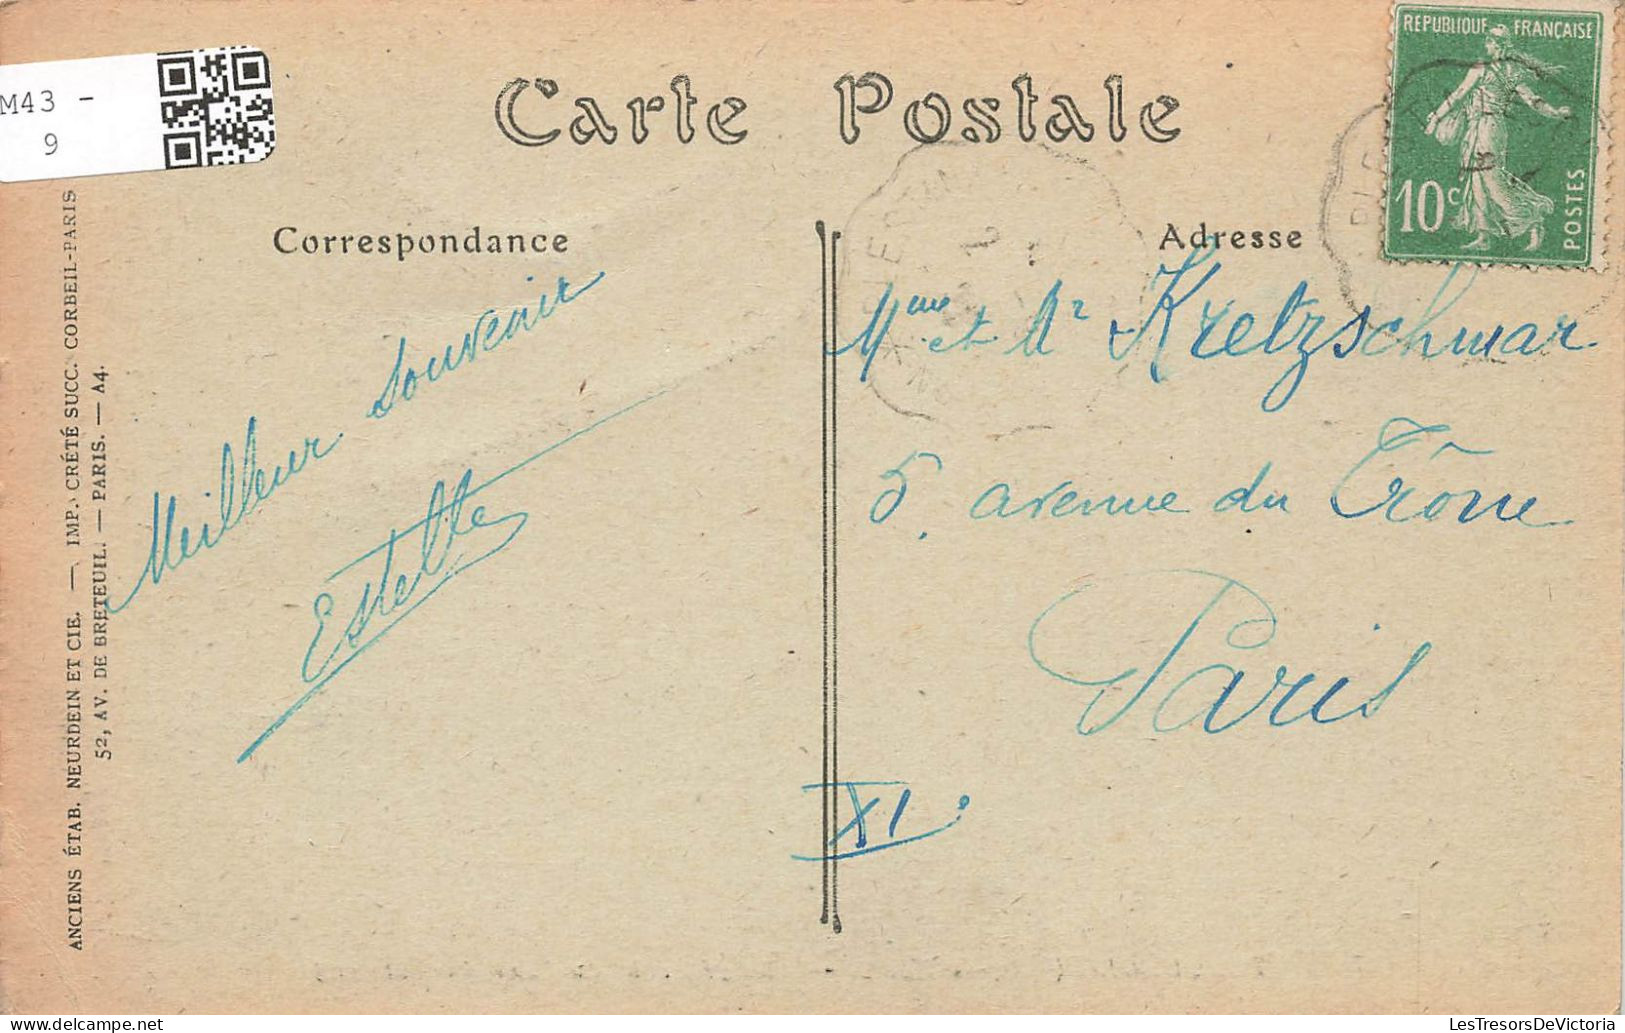 FRANCE - Tonquedec - Vue Générale Du Côté Sud Du Château - Carte Postale Ancienne - Tonquédec